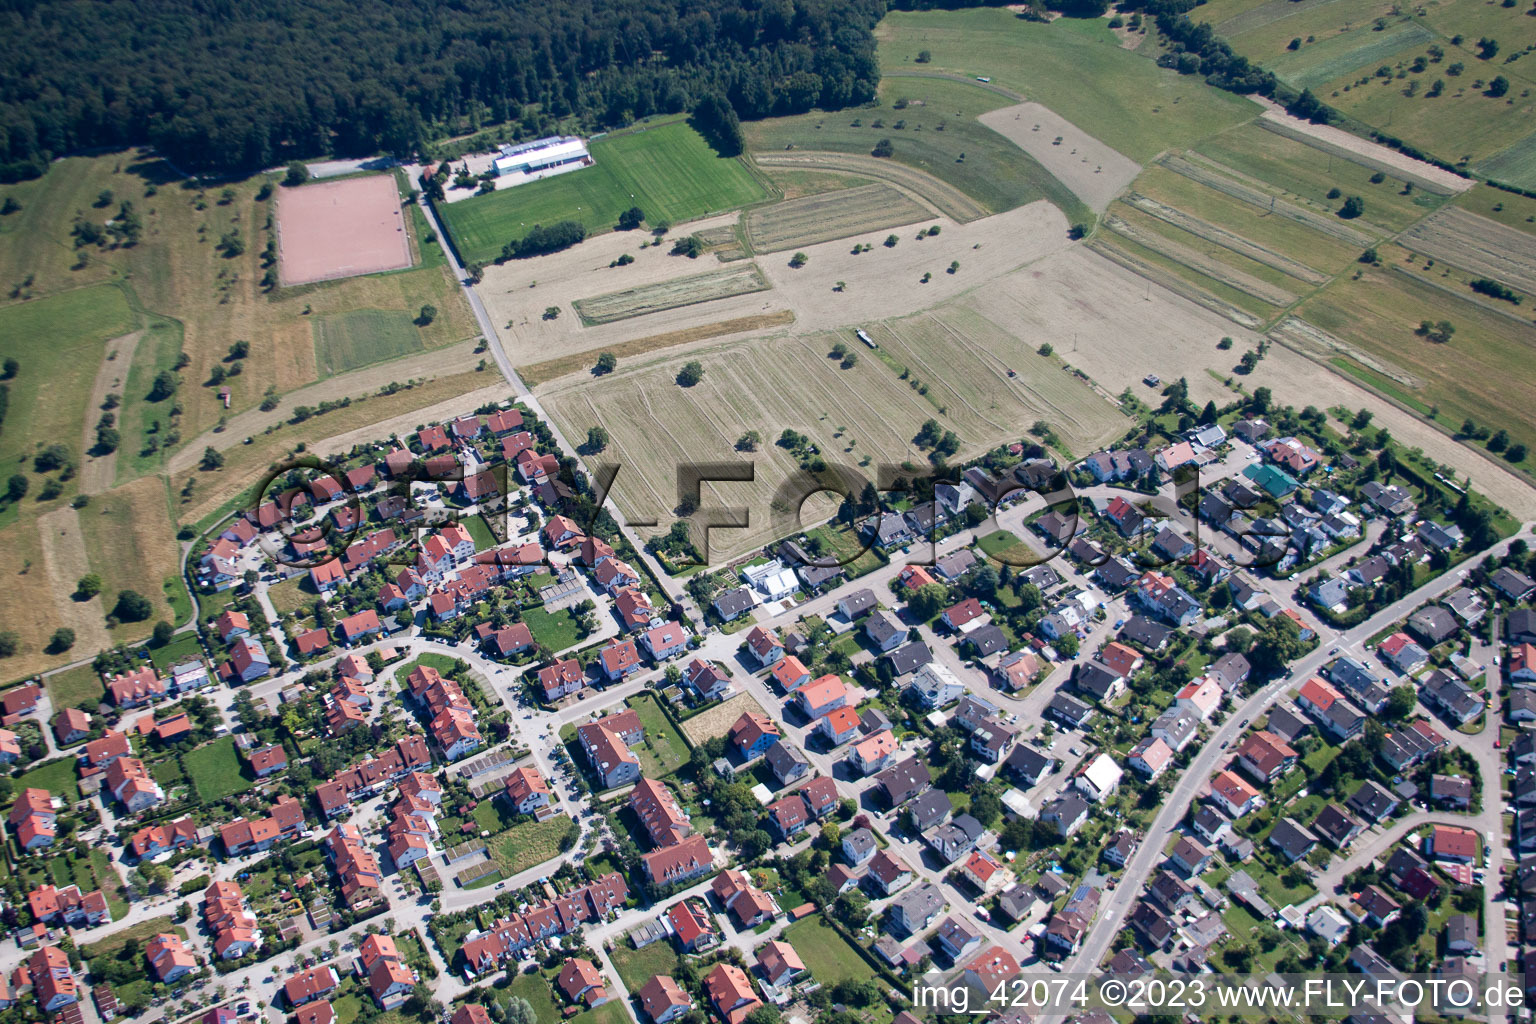 Ortsteil Spessart in Ettlingen im Bundesland Baden-Württemberg, Deutschland aus der Luft betrachtet